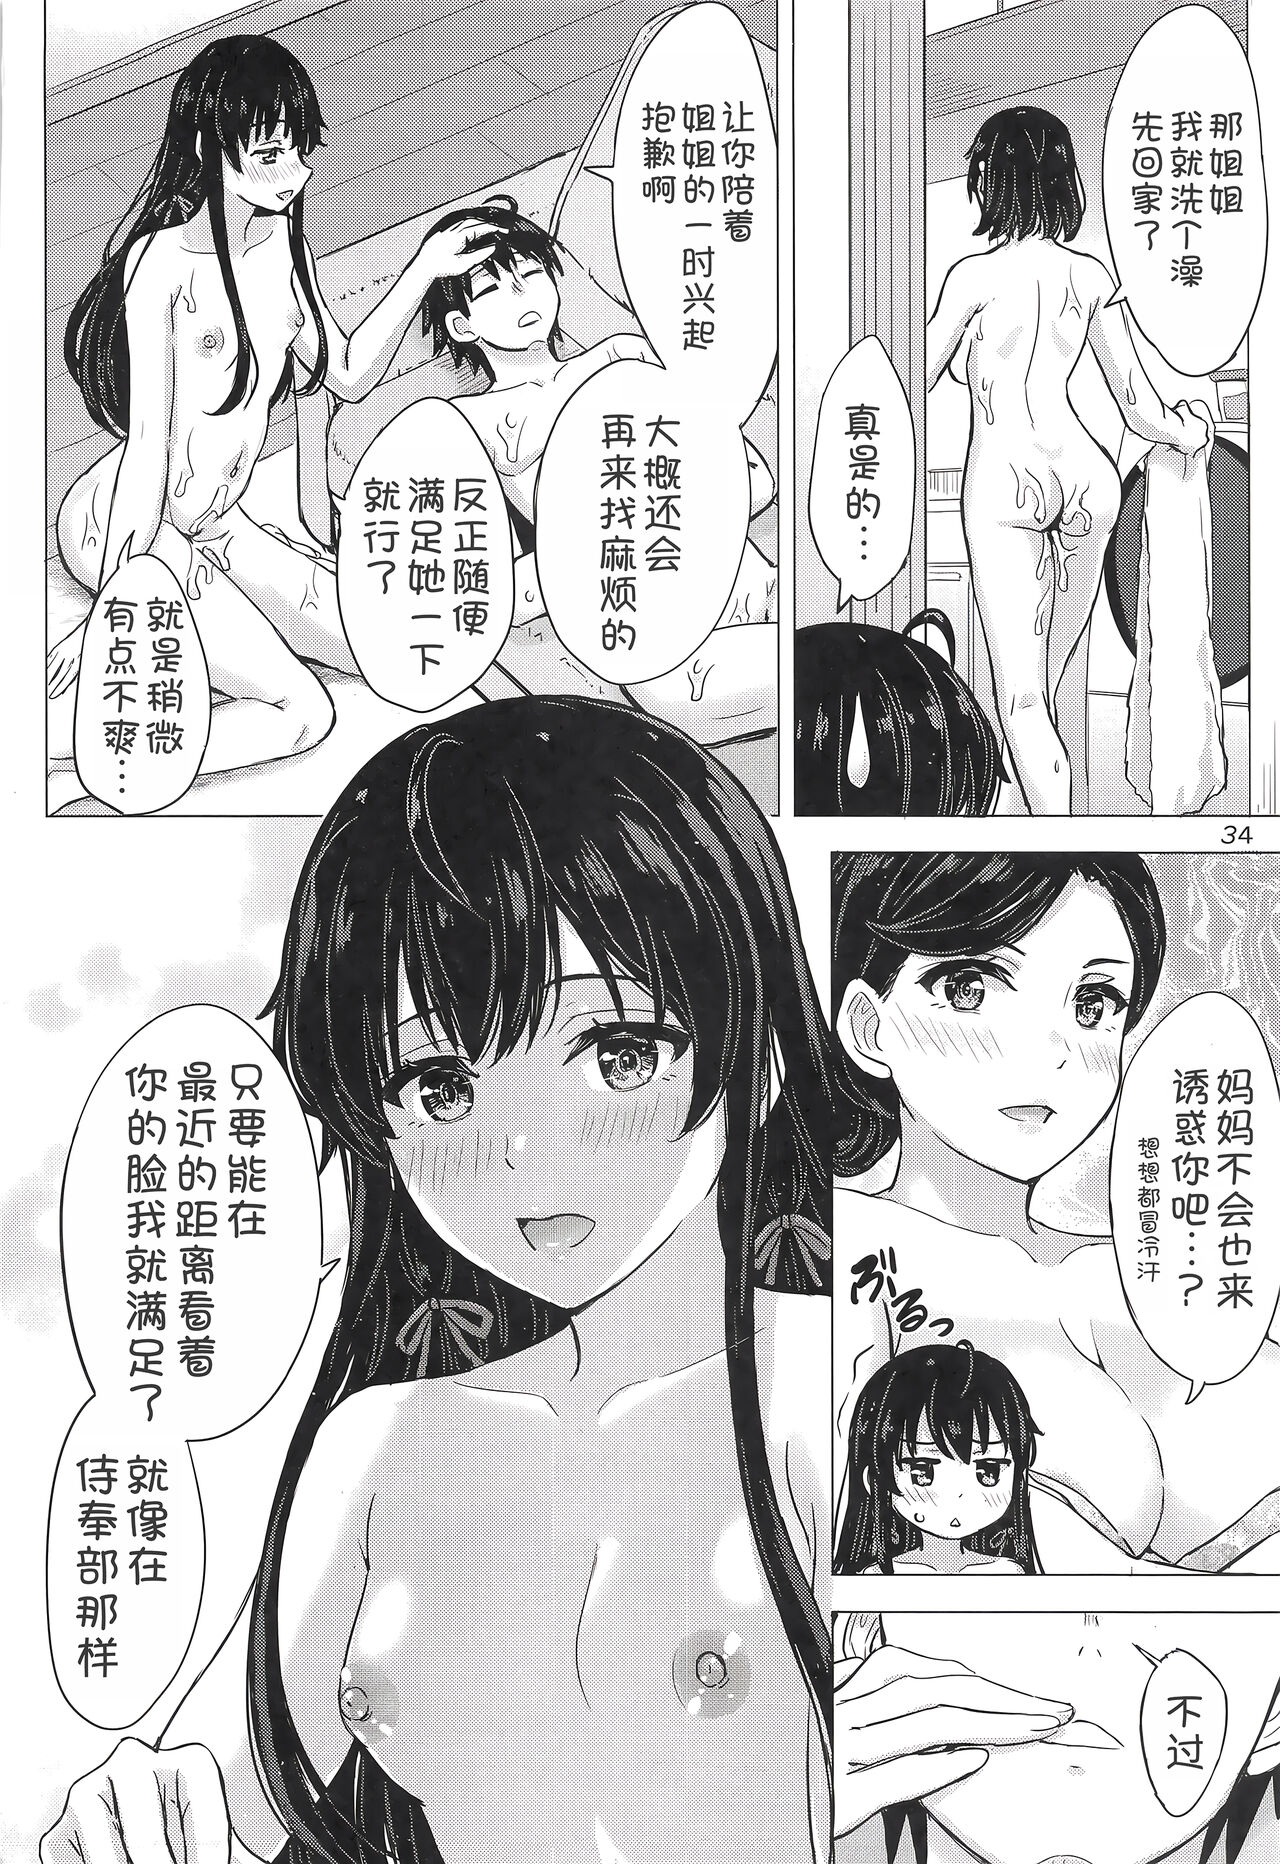 Miwakuteki ni Yukinoshita Shimai ga Rouraku Shite Kuru. - The Yukinoshita sisters continue to have sex with hachiman. - Foto 34